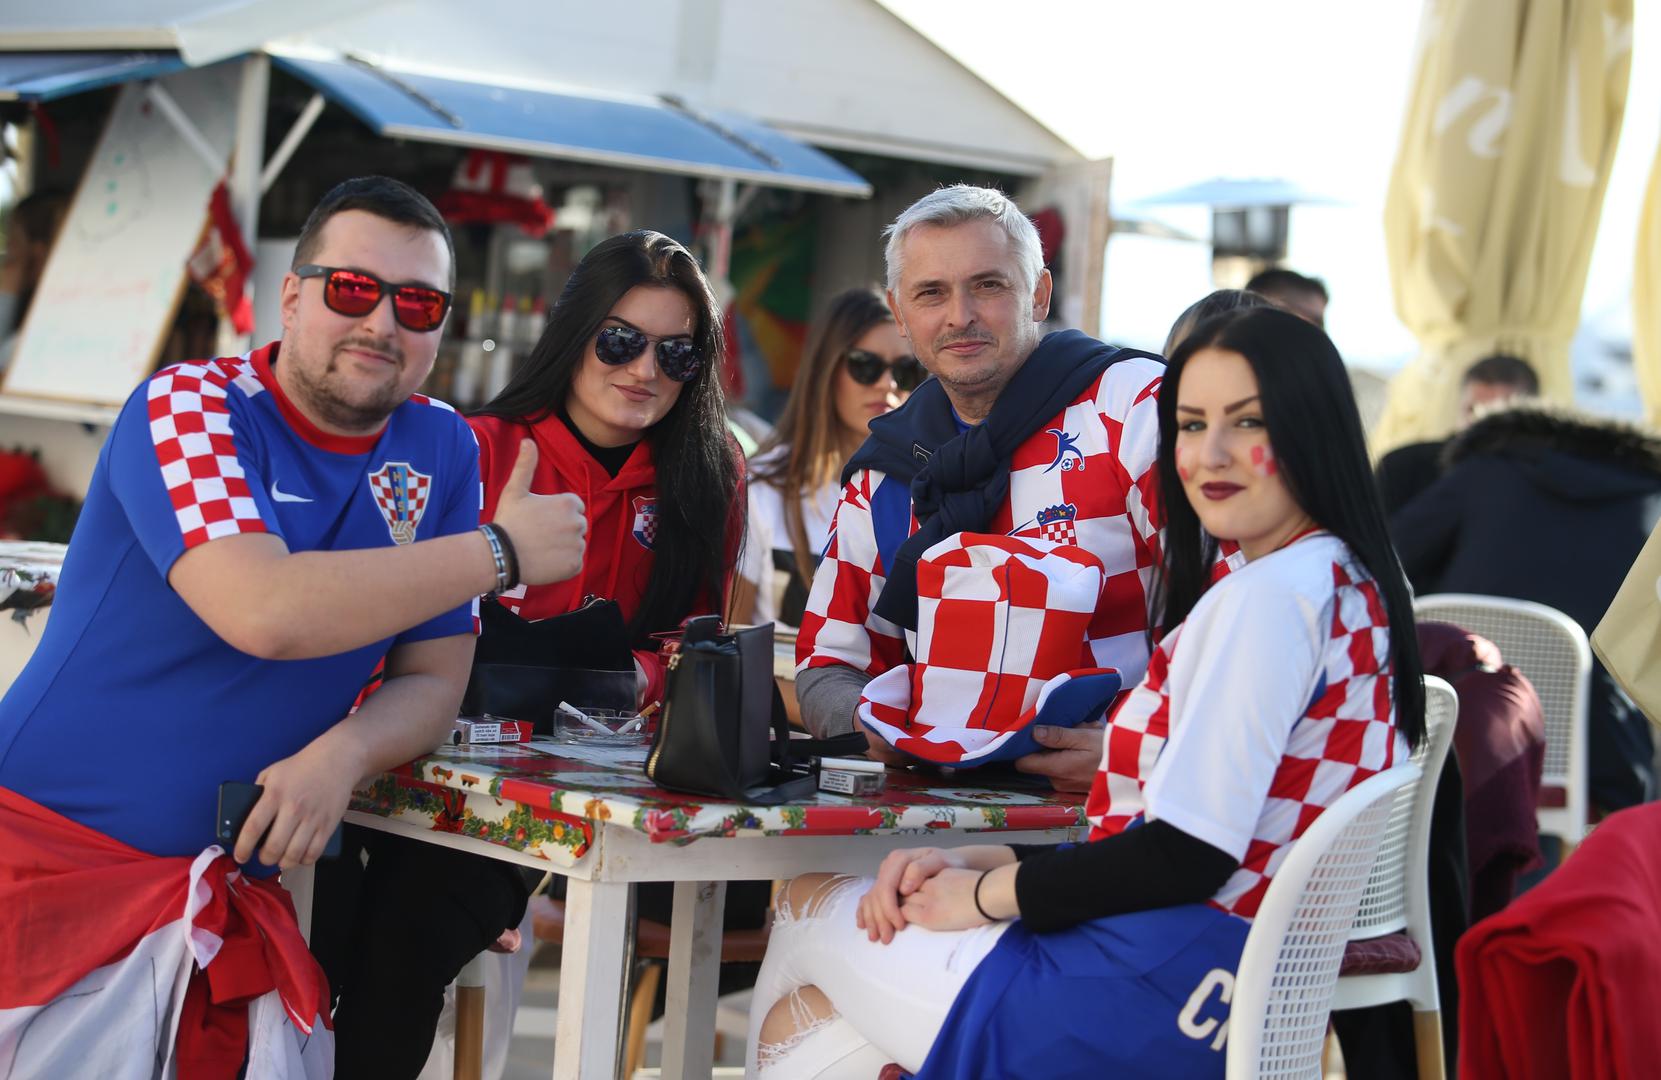 Danas u Hrvatskoj počinje europsko rukometno prvenstvo. Naši rukometaši u Splitu (20.30 sati) otvaraju natjecanje protiv Srbije. Sunčano vrijeme izmamilo je navijače da već od ranijih popodnevnih sati dvoboj dočekaju izvan svojih domova